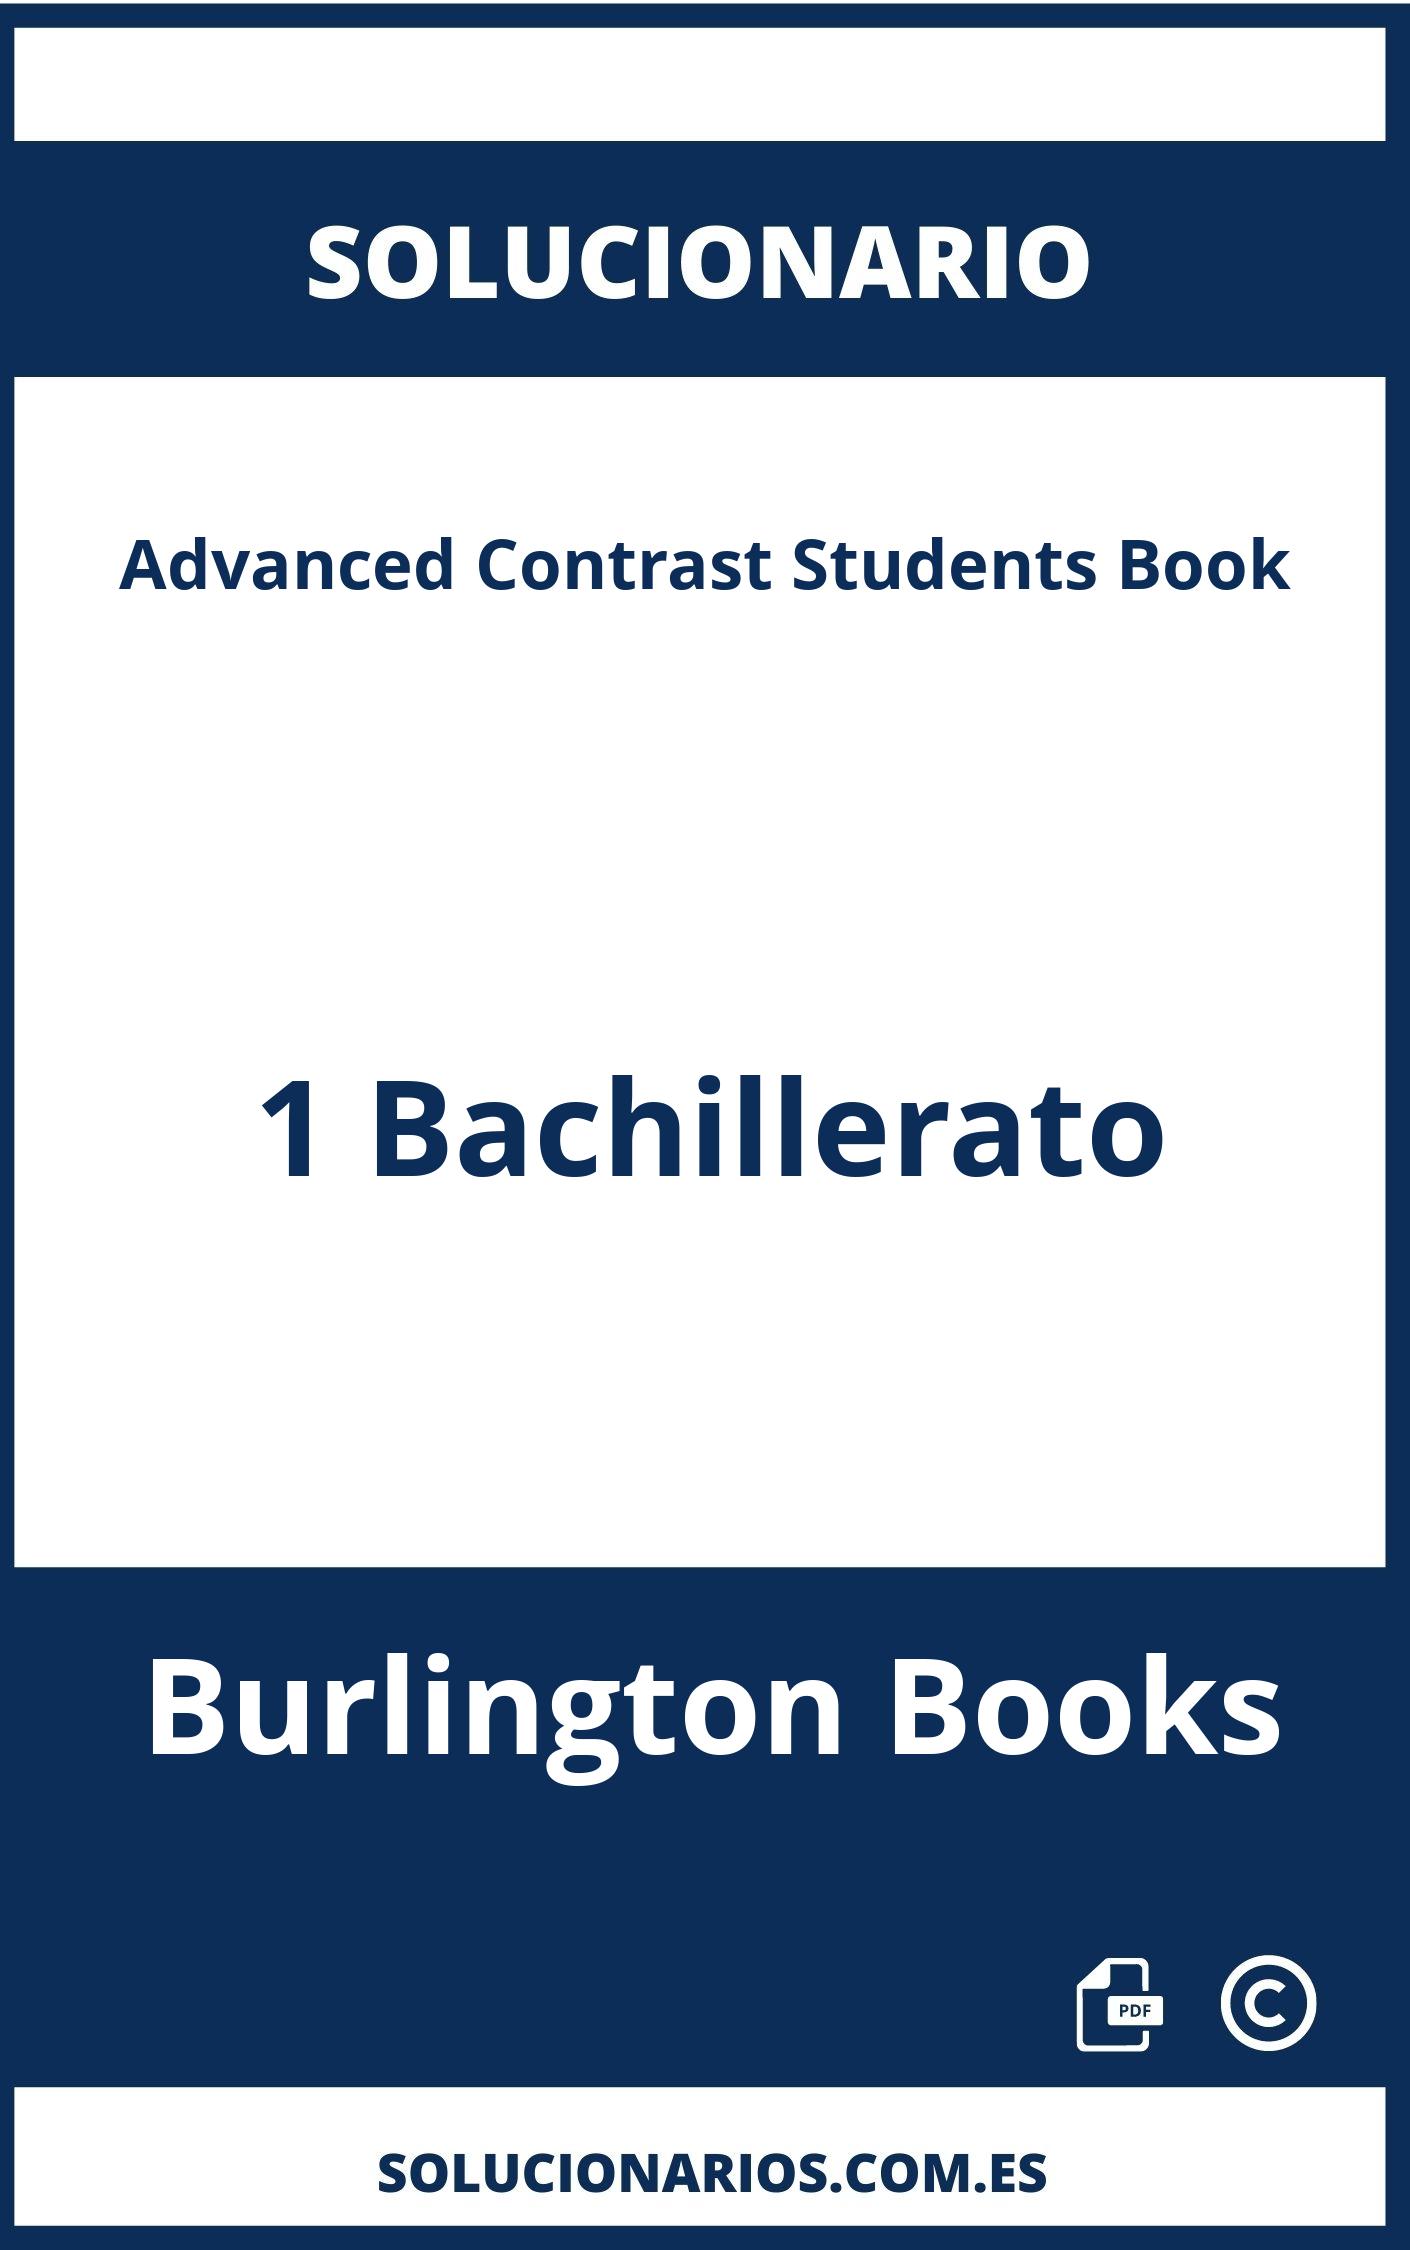 Solucionario Advanced Contrast Students Book 1 Bachillerato Burlington Books